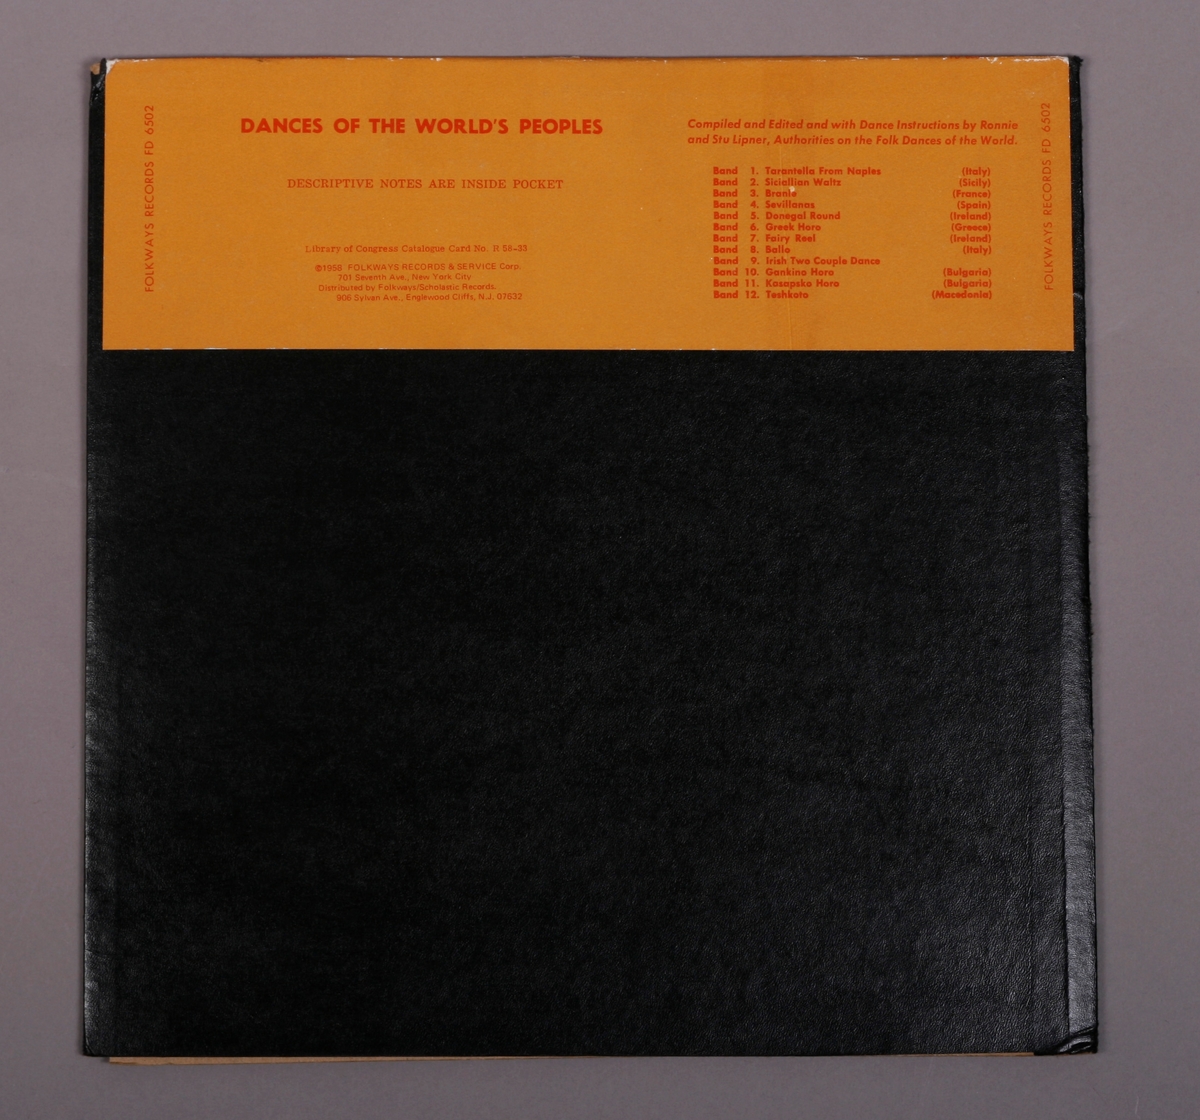 Grammofonplate i svart vinyl og plateomslag i papp. Teksthefte av papir. Plata ligger i en plastlomme.